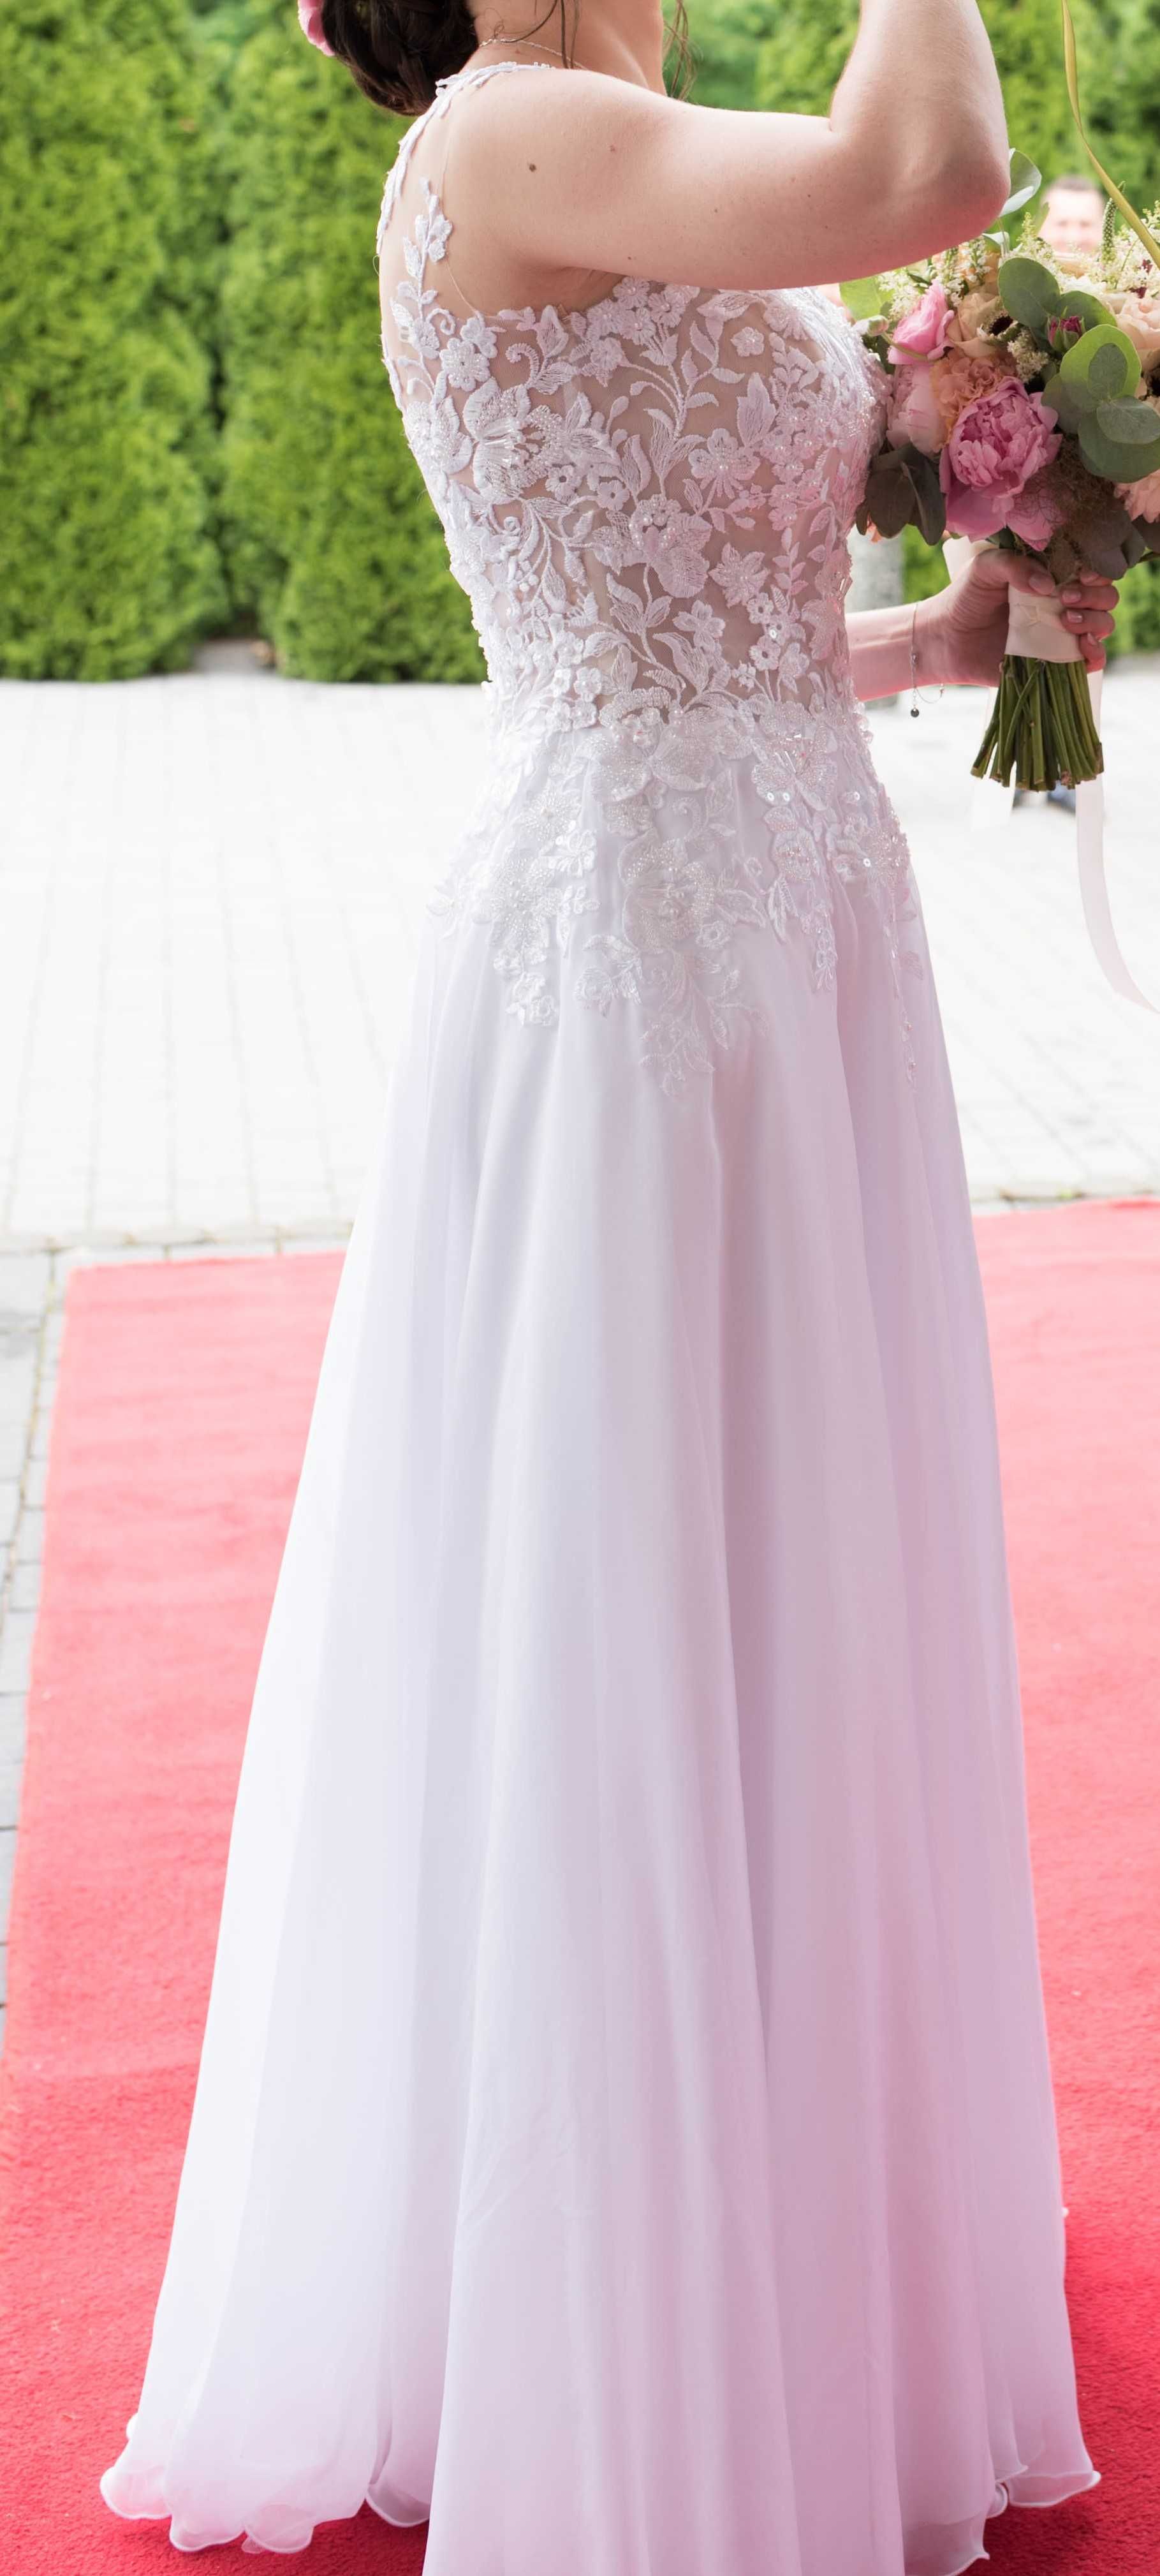 Biała suknia ślubna, model Rihanna